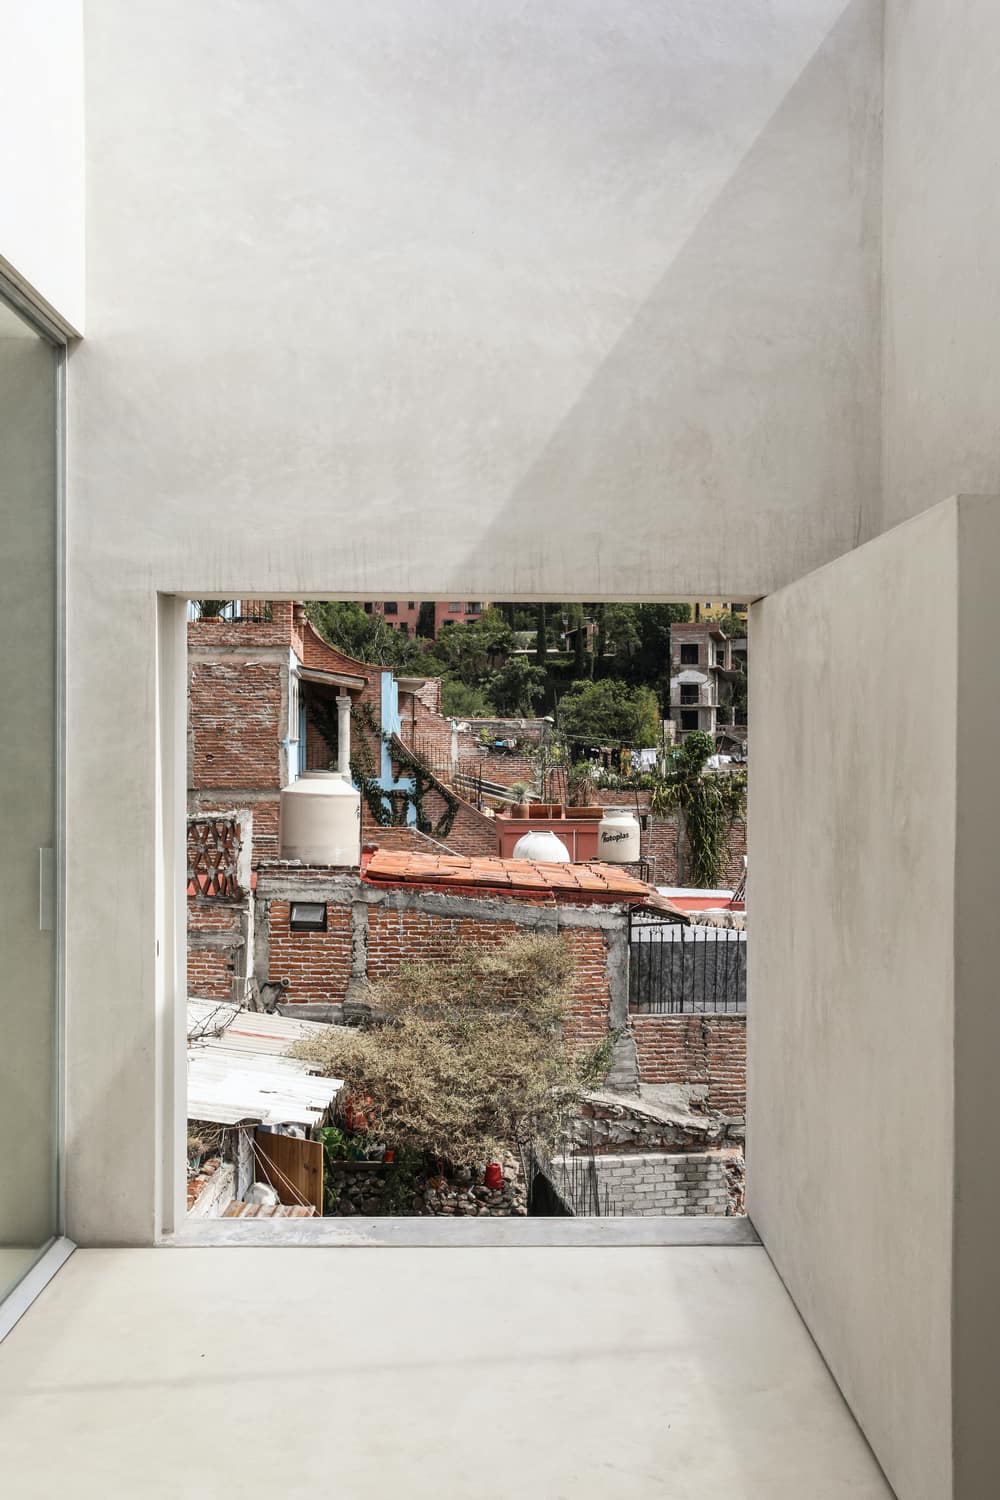 Sin Nombre Casa y Galeria in Mexico by Associates Architecture